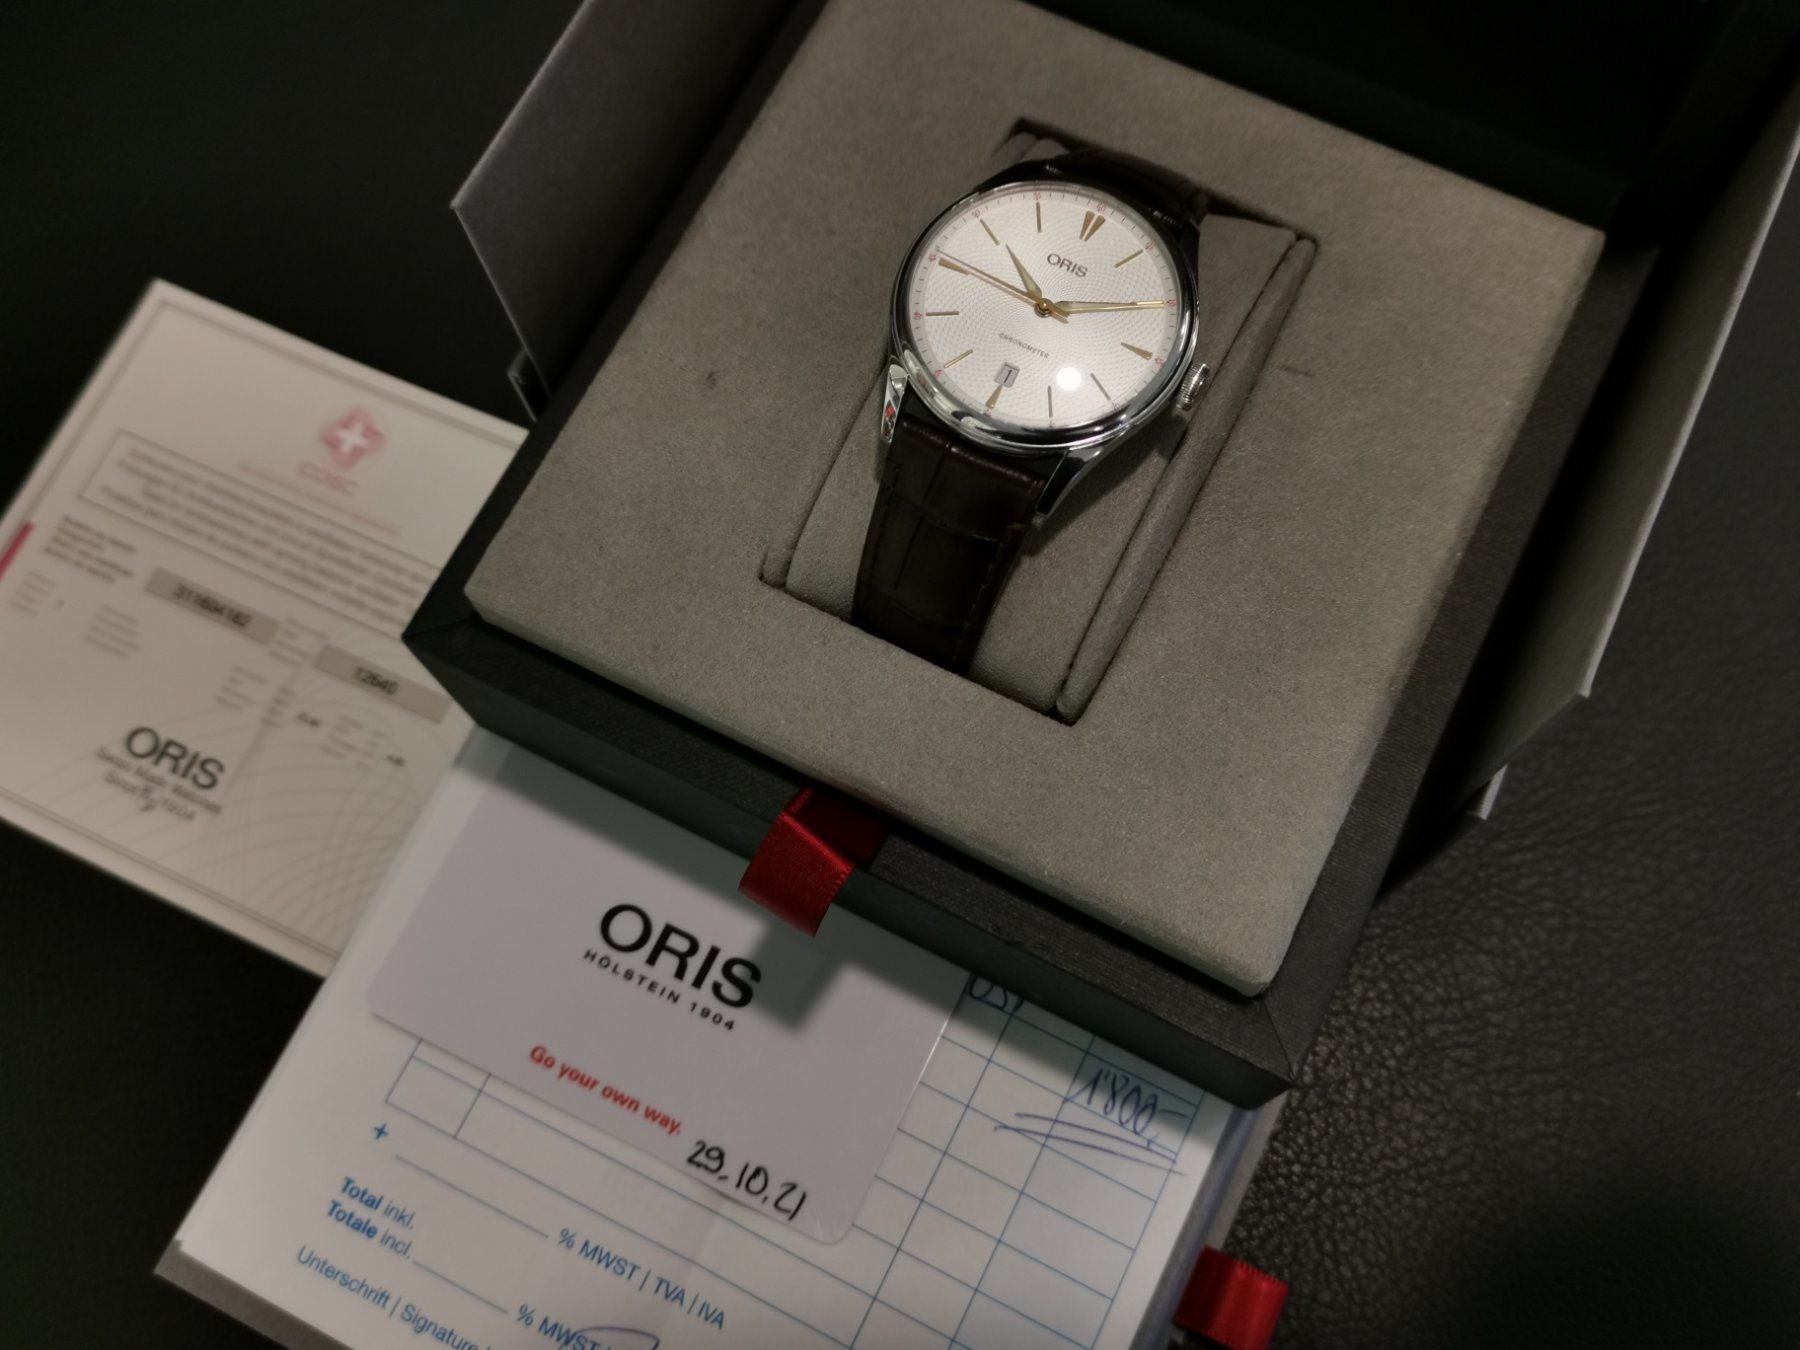 Oris Artelier Chronometer Date 40mm